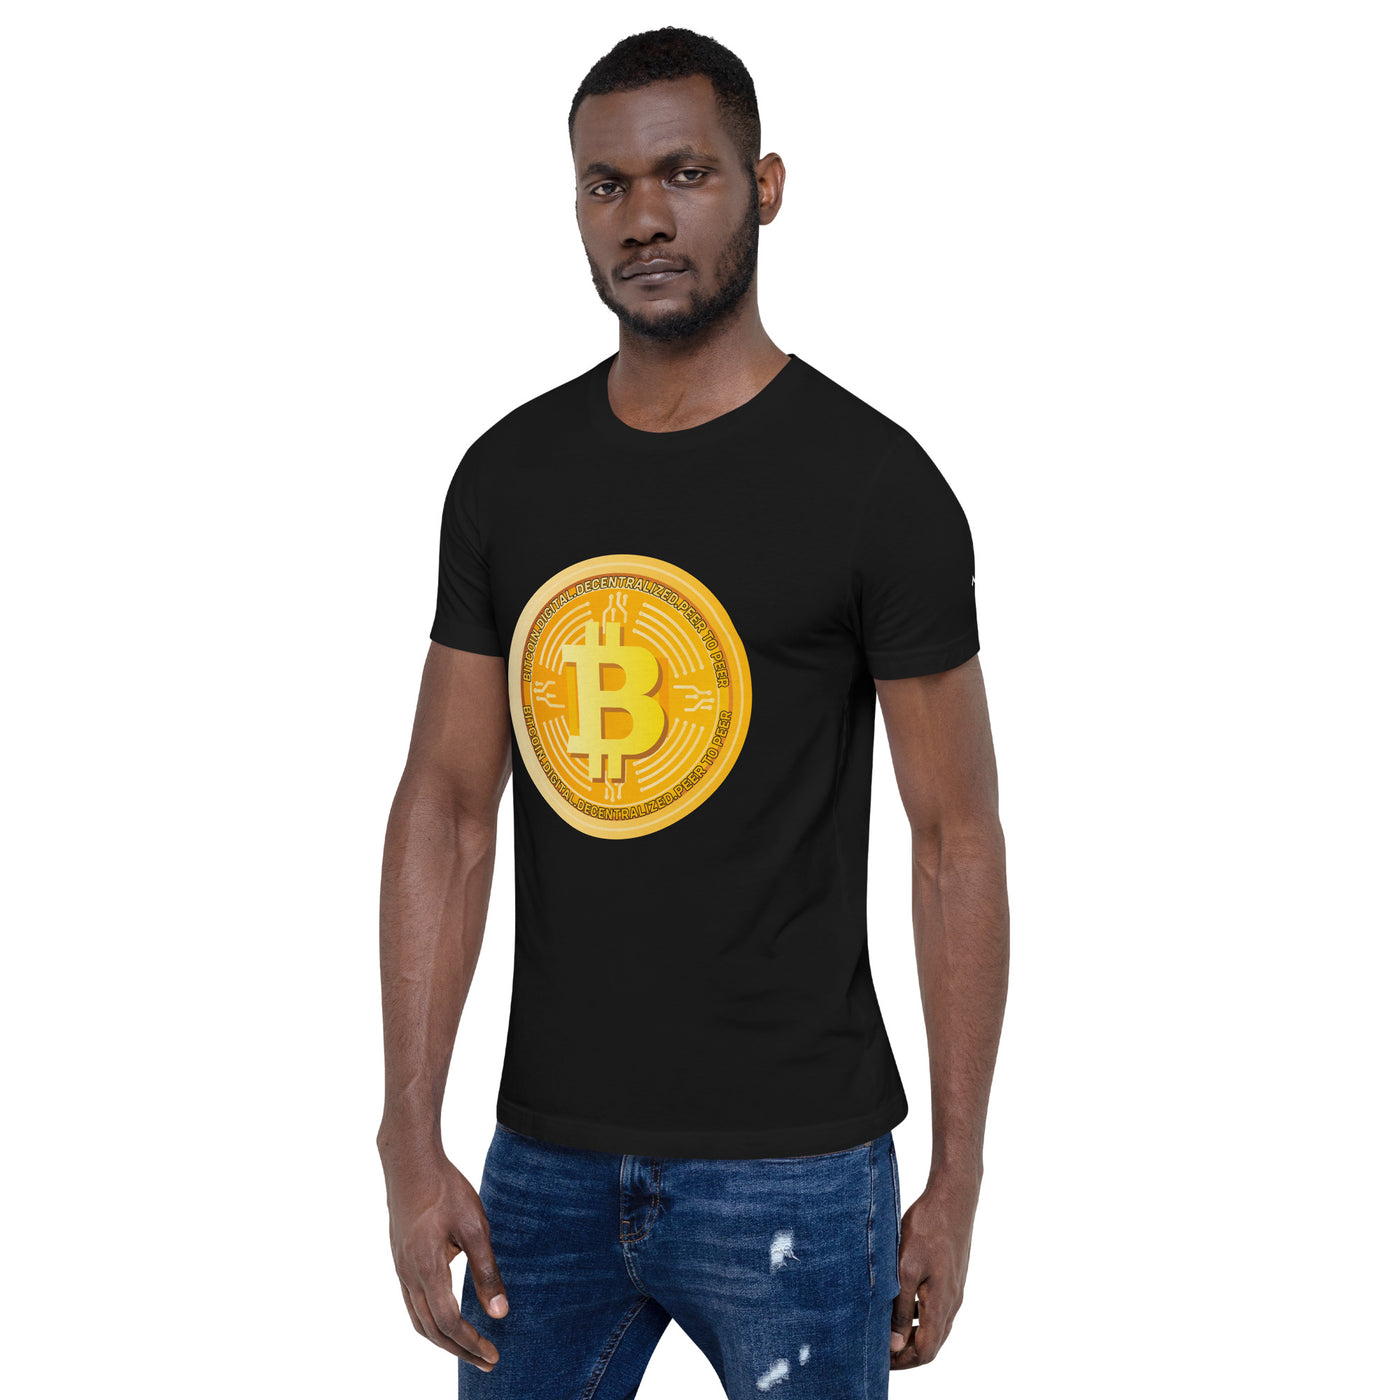 Bitcoin Medal - Unisex t-shirt